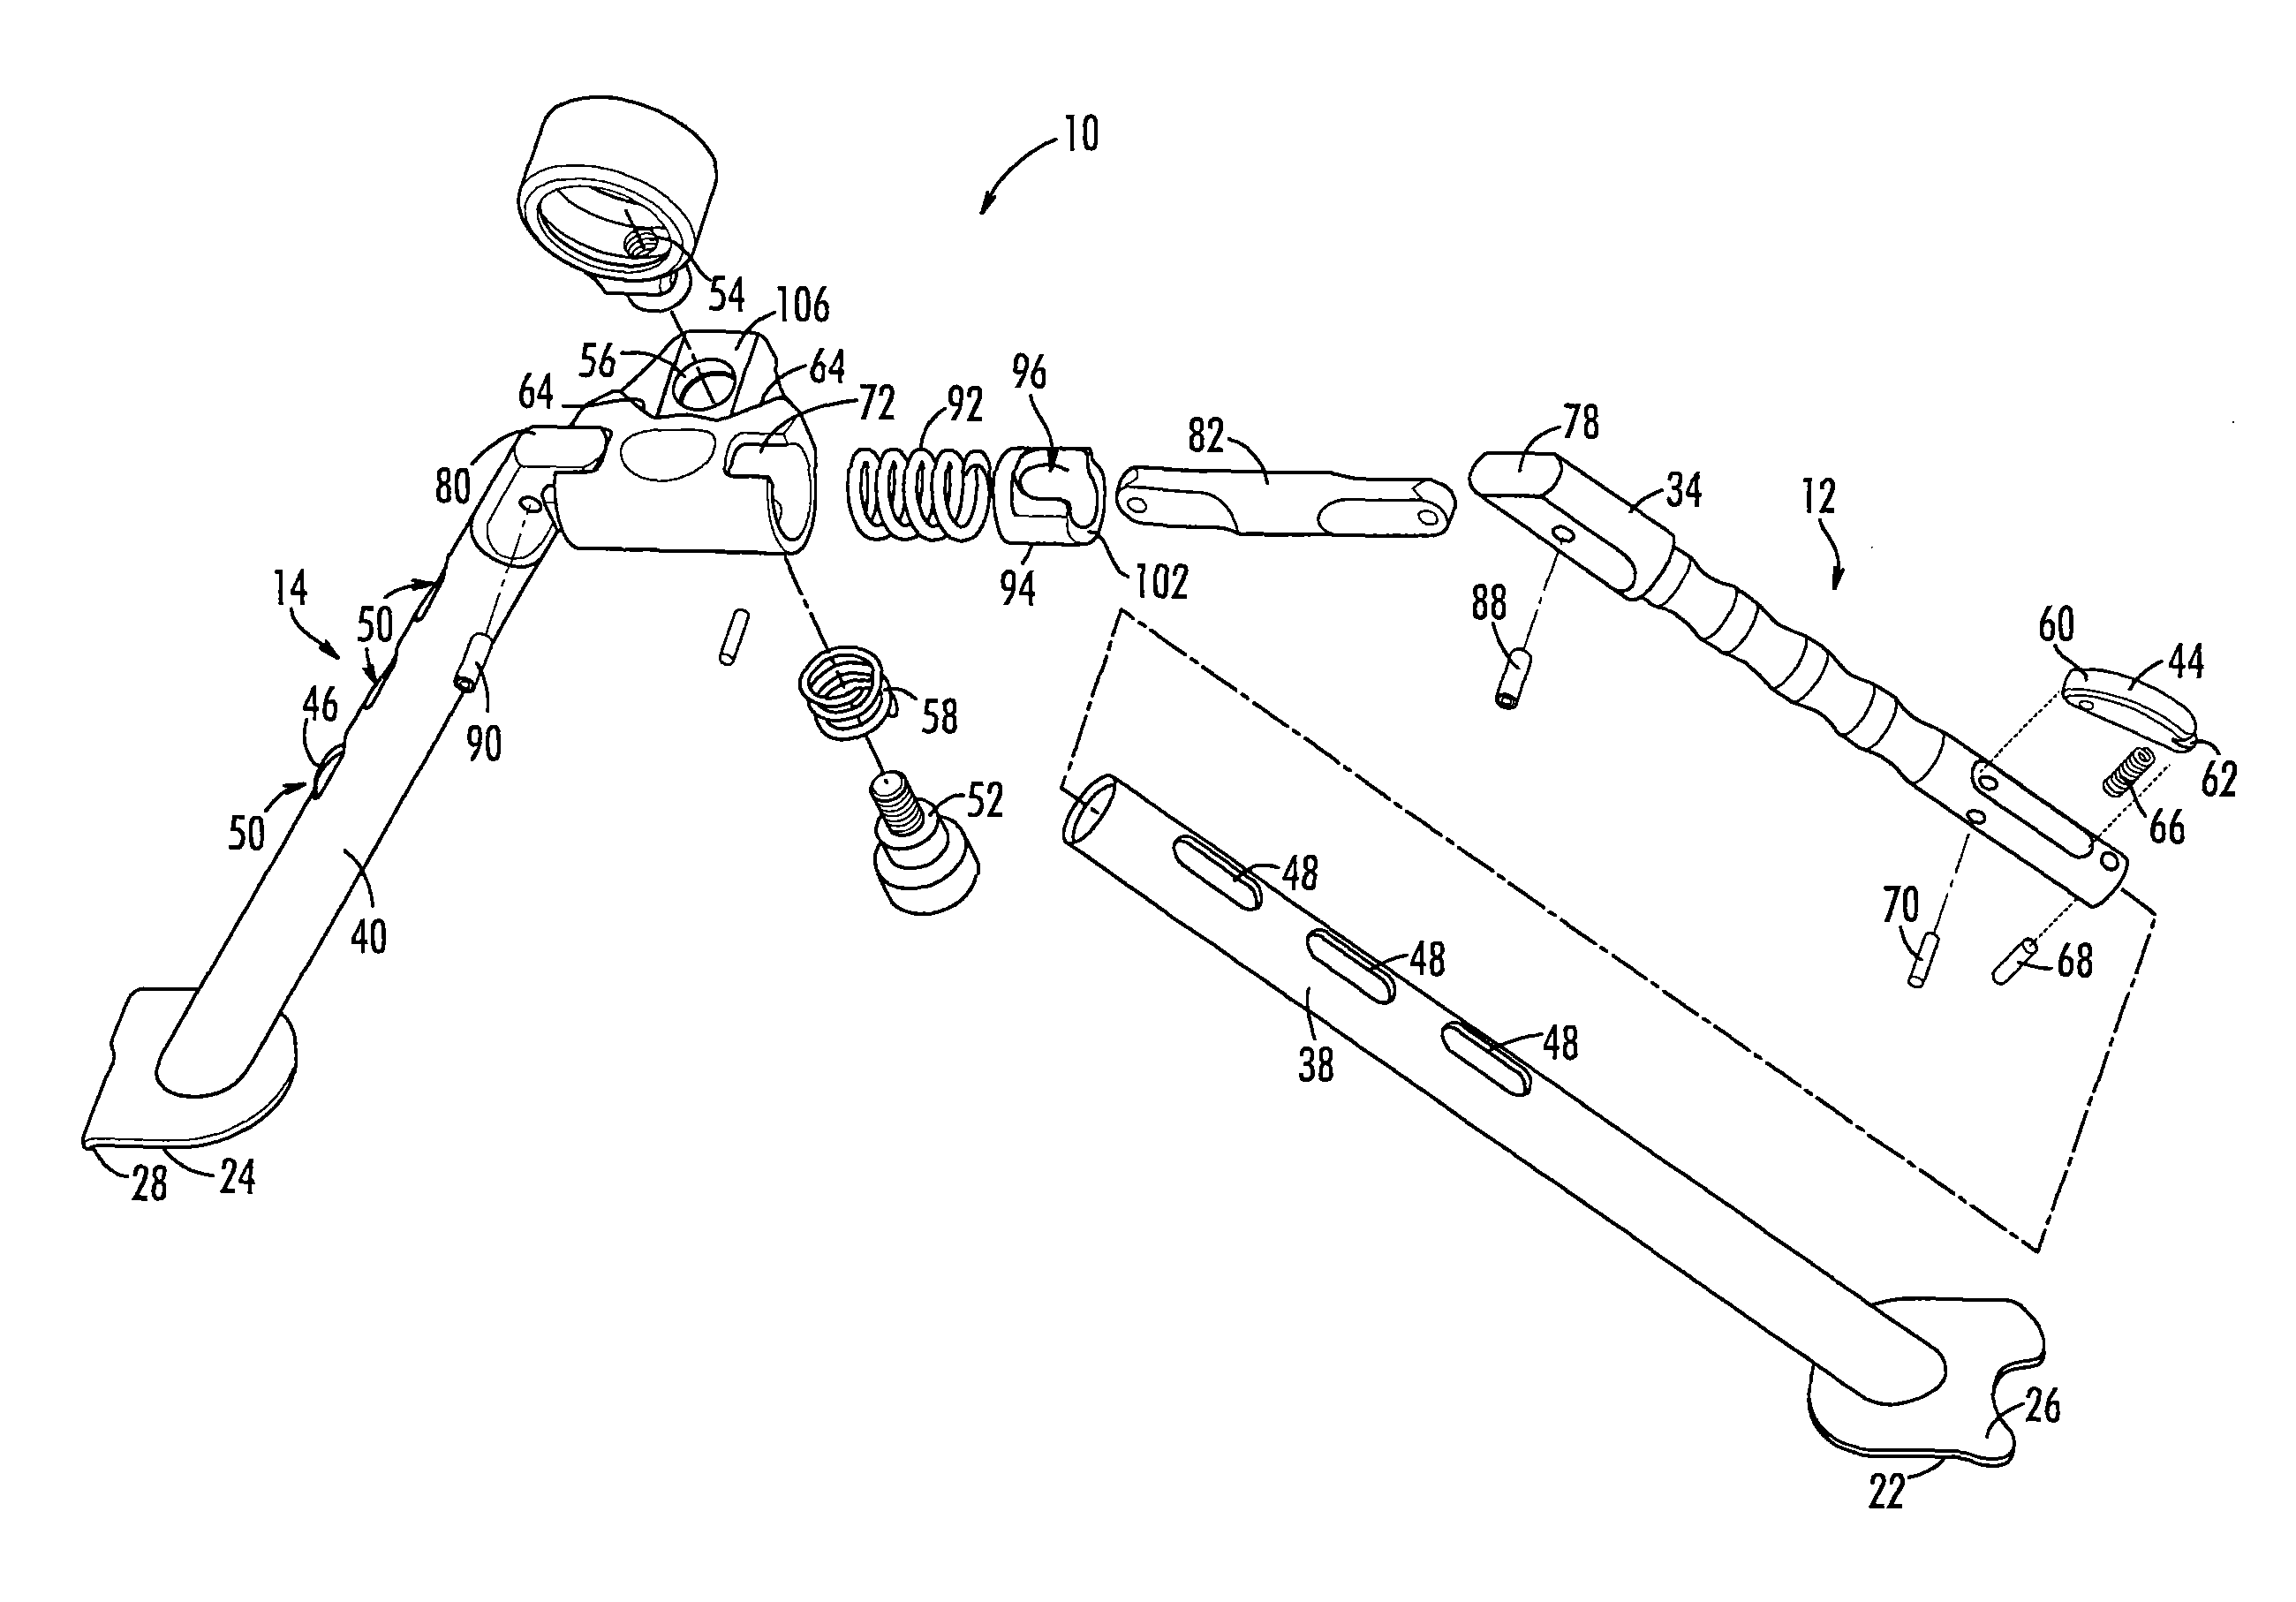 Bipod for light-weight machine gun